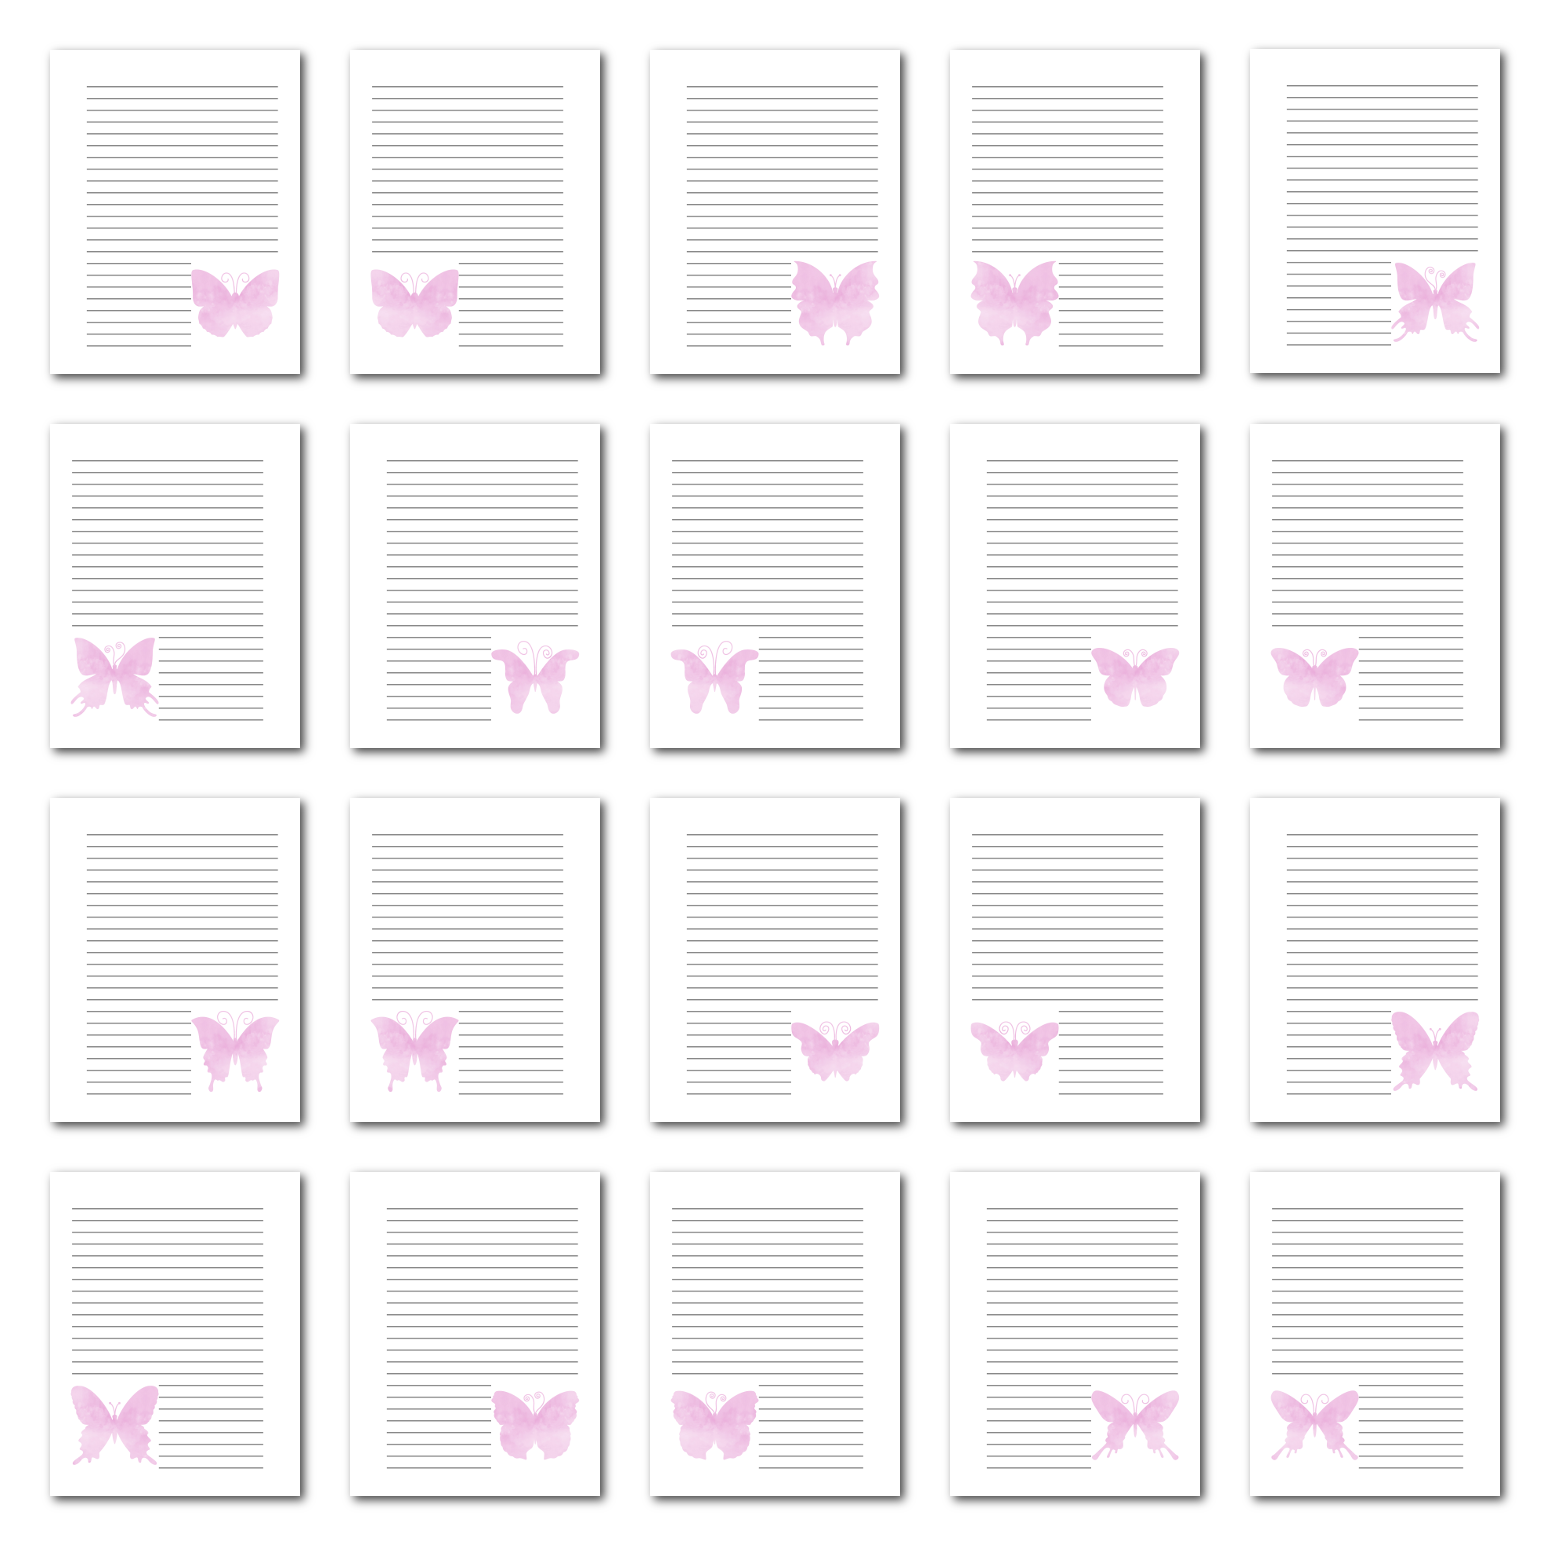 Zen PLR Journal Templates Light Watercolor Butterflies Pink Print Journal Pages